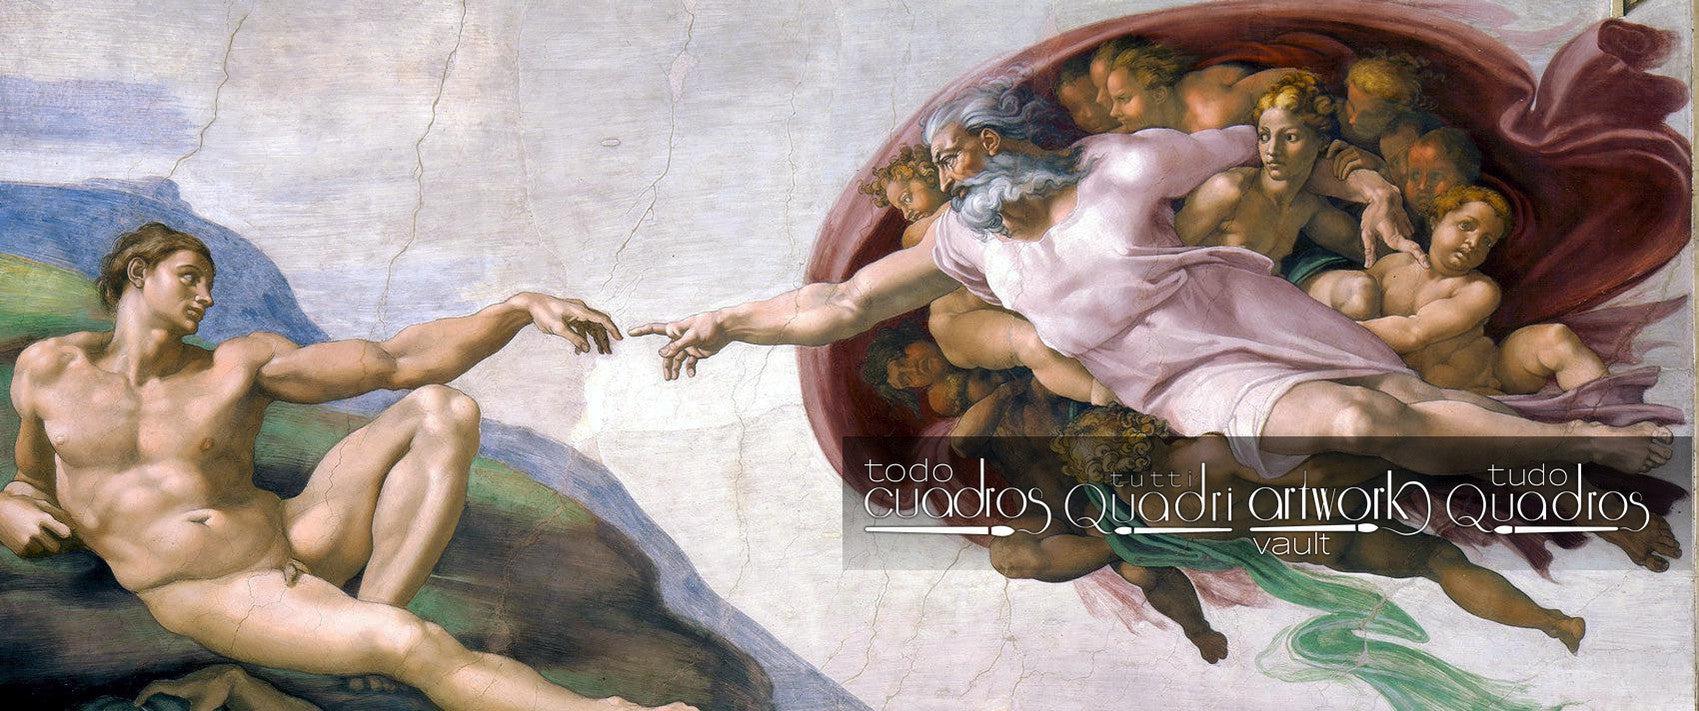 La Creazione di Adamo, Michelangelo